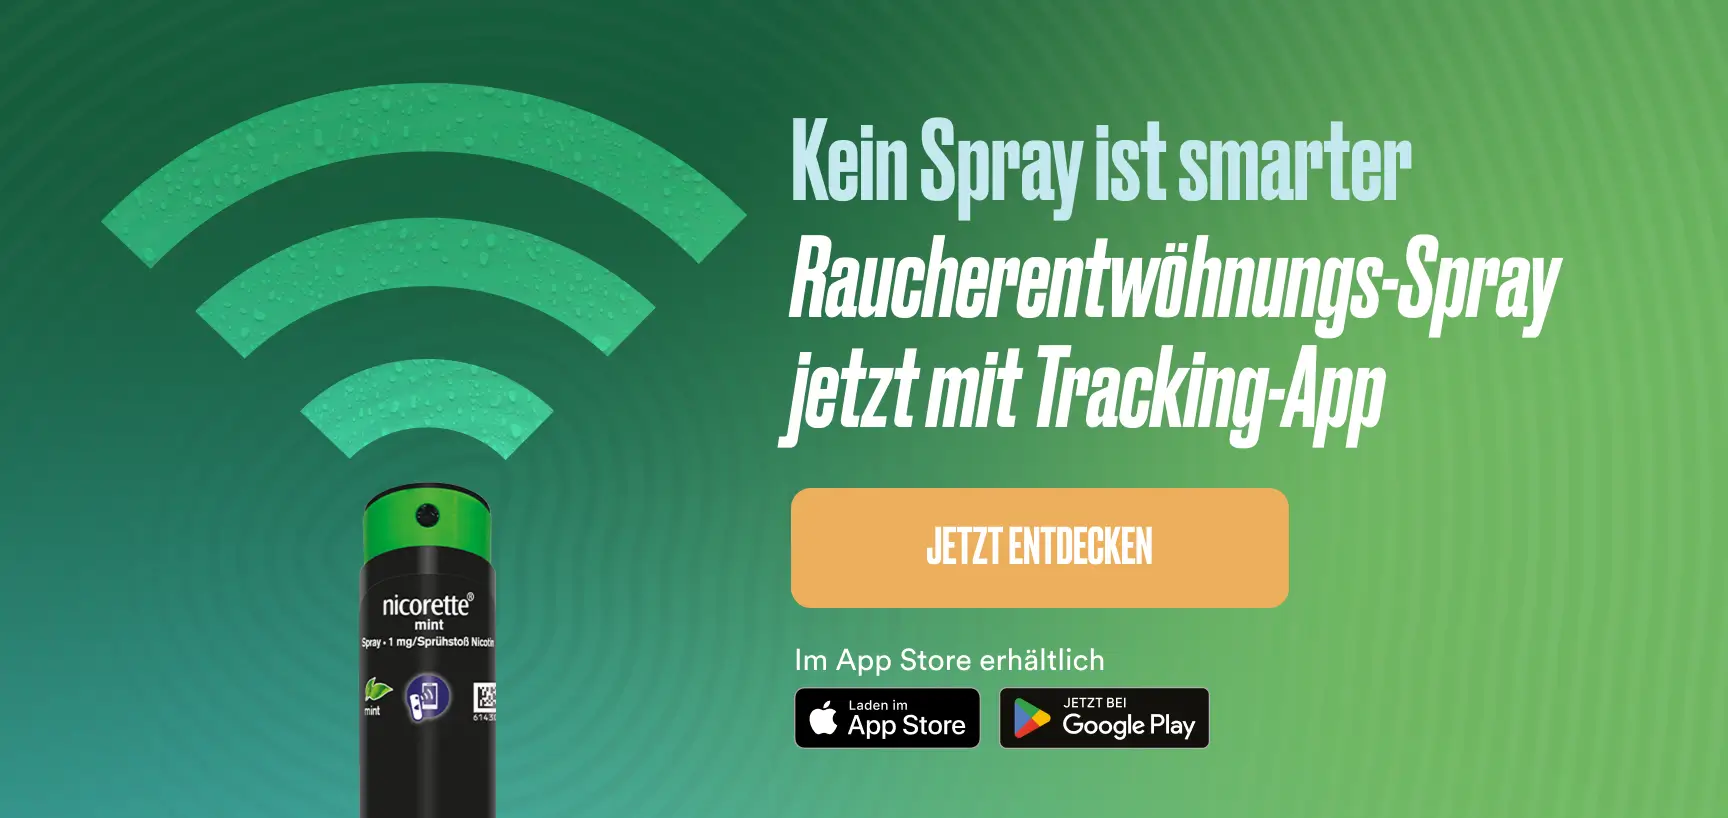 Kein Spray ist smarter. Rauchentwöhnungsspray jetzt mit Tracking-App. Jetzt entdecken.